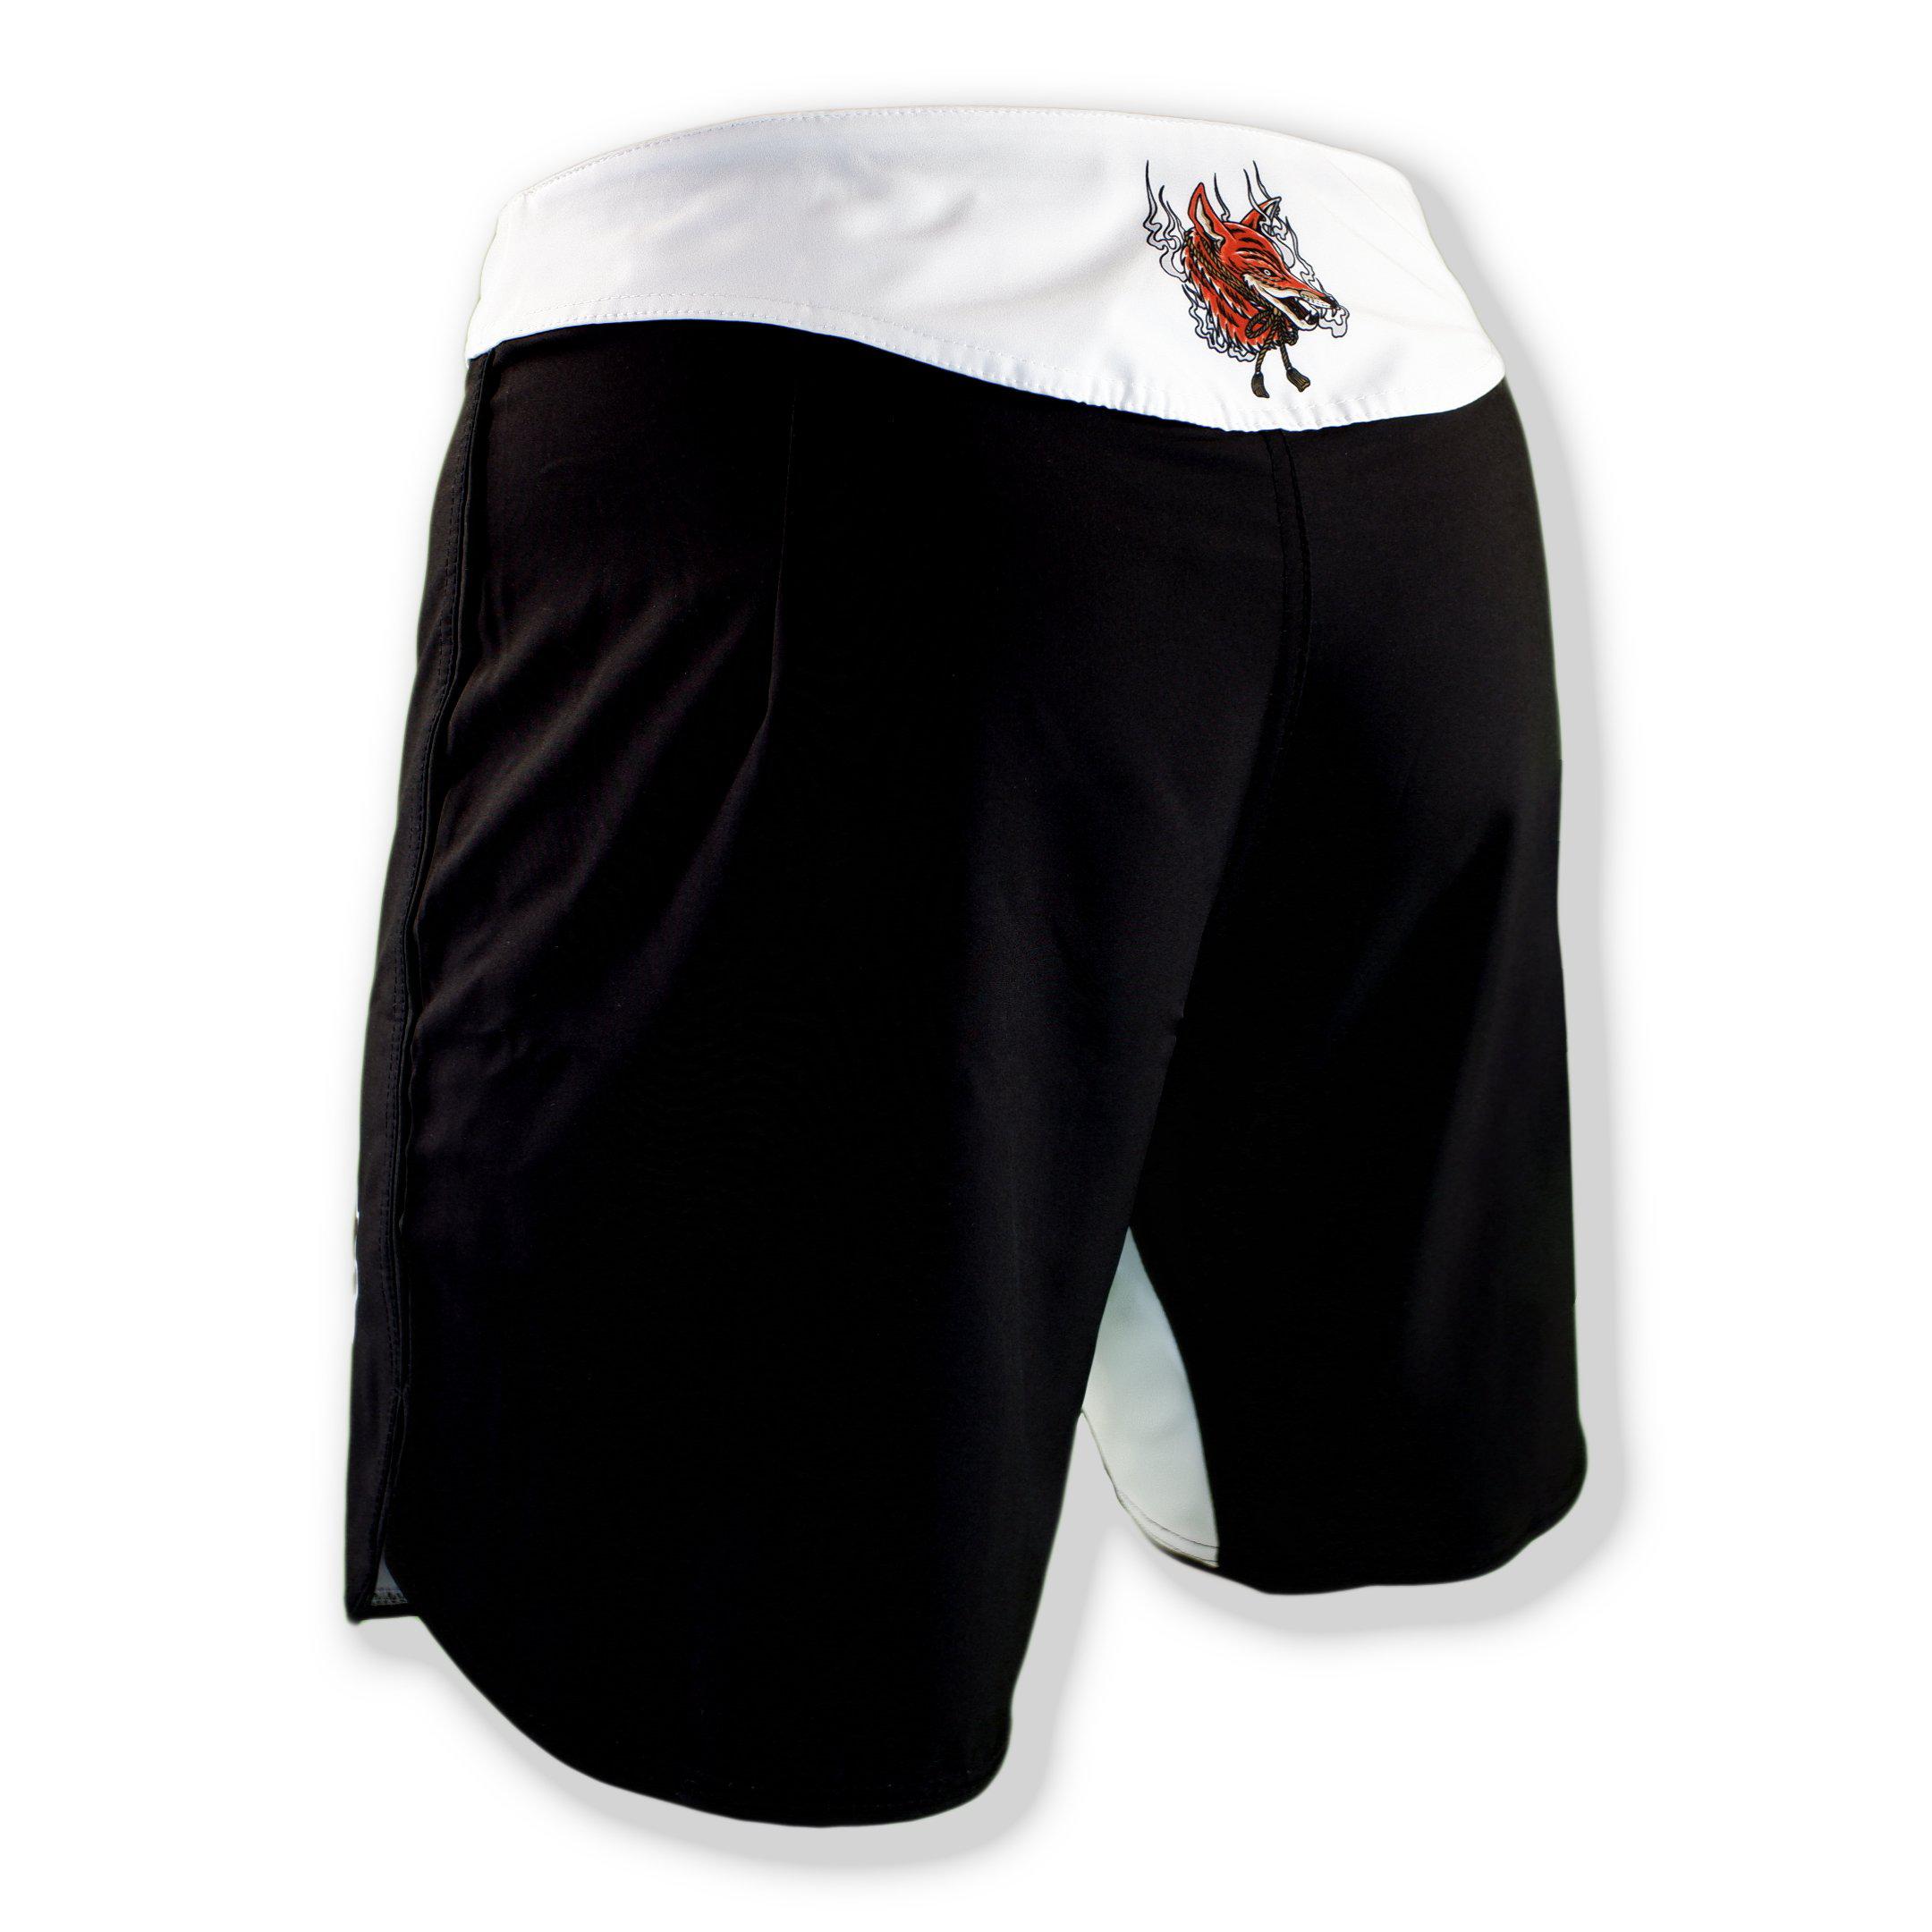 Kitsune Grappling Shorts - Zenko Fightwear